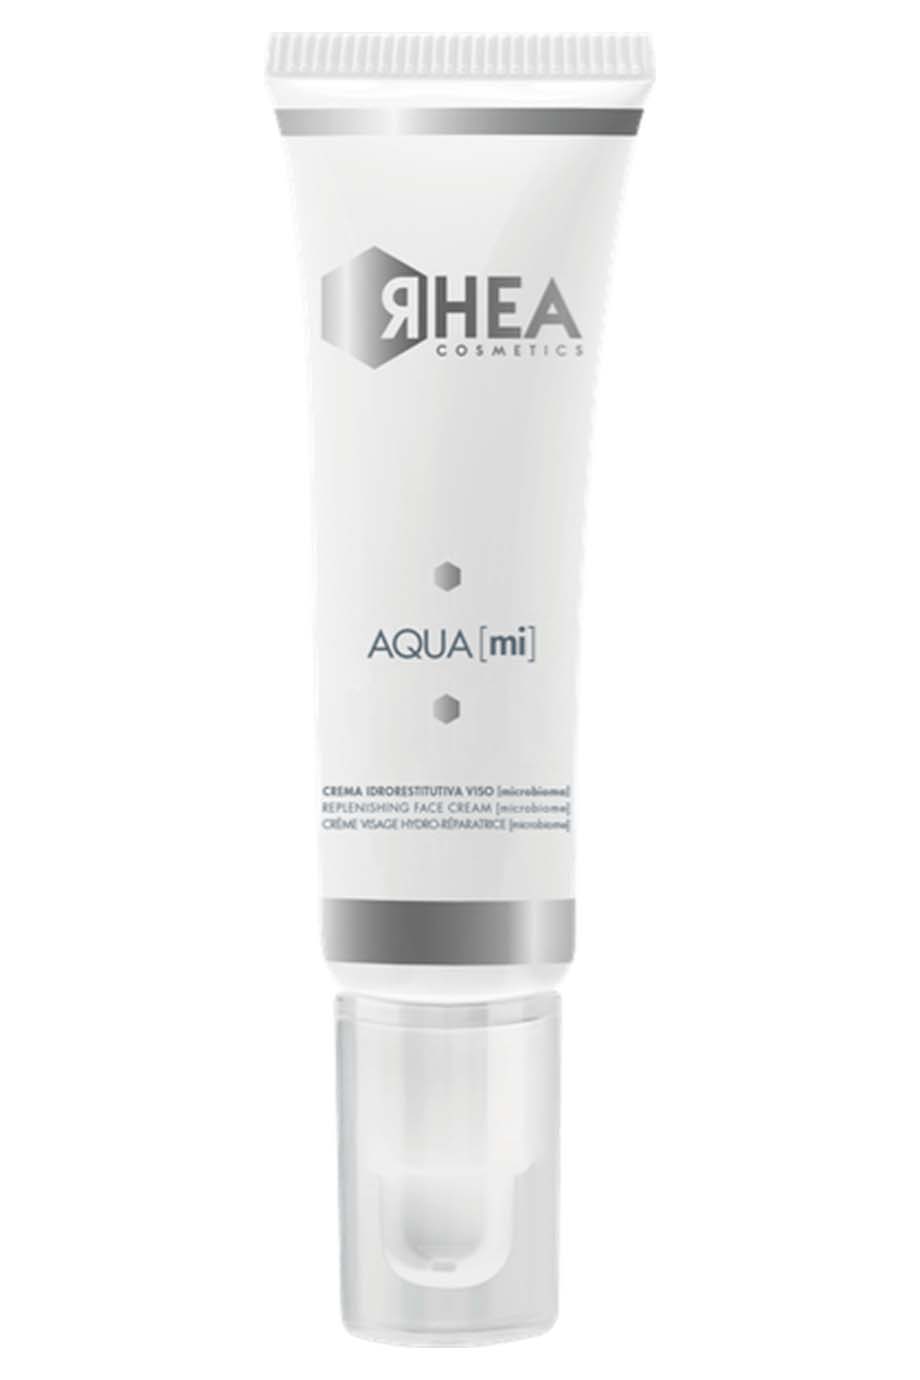 Крем-Мікробіом з глибокою зволожуючою дією Aqua [mi] ЯHEA Cosmetics 50 мл — фото №1